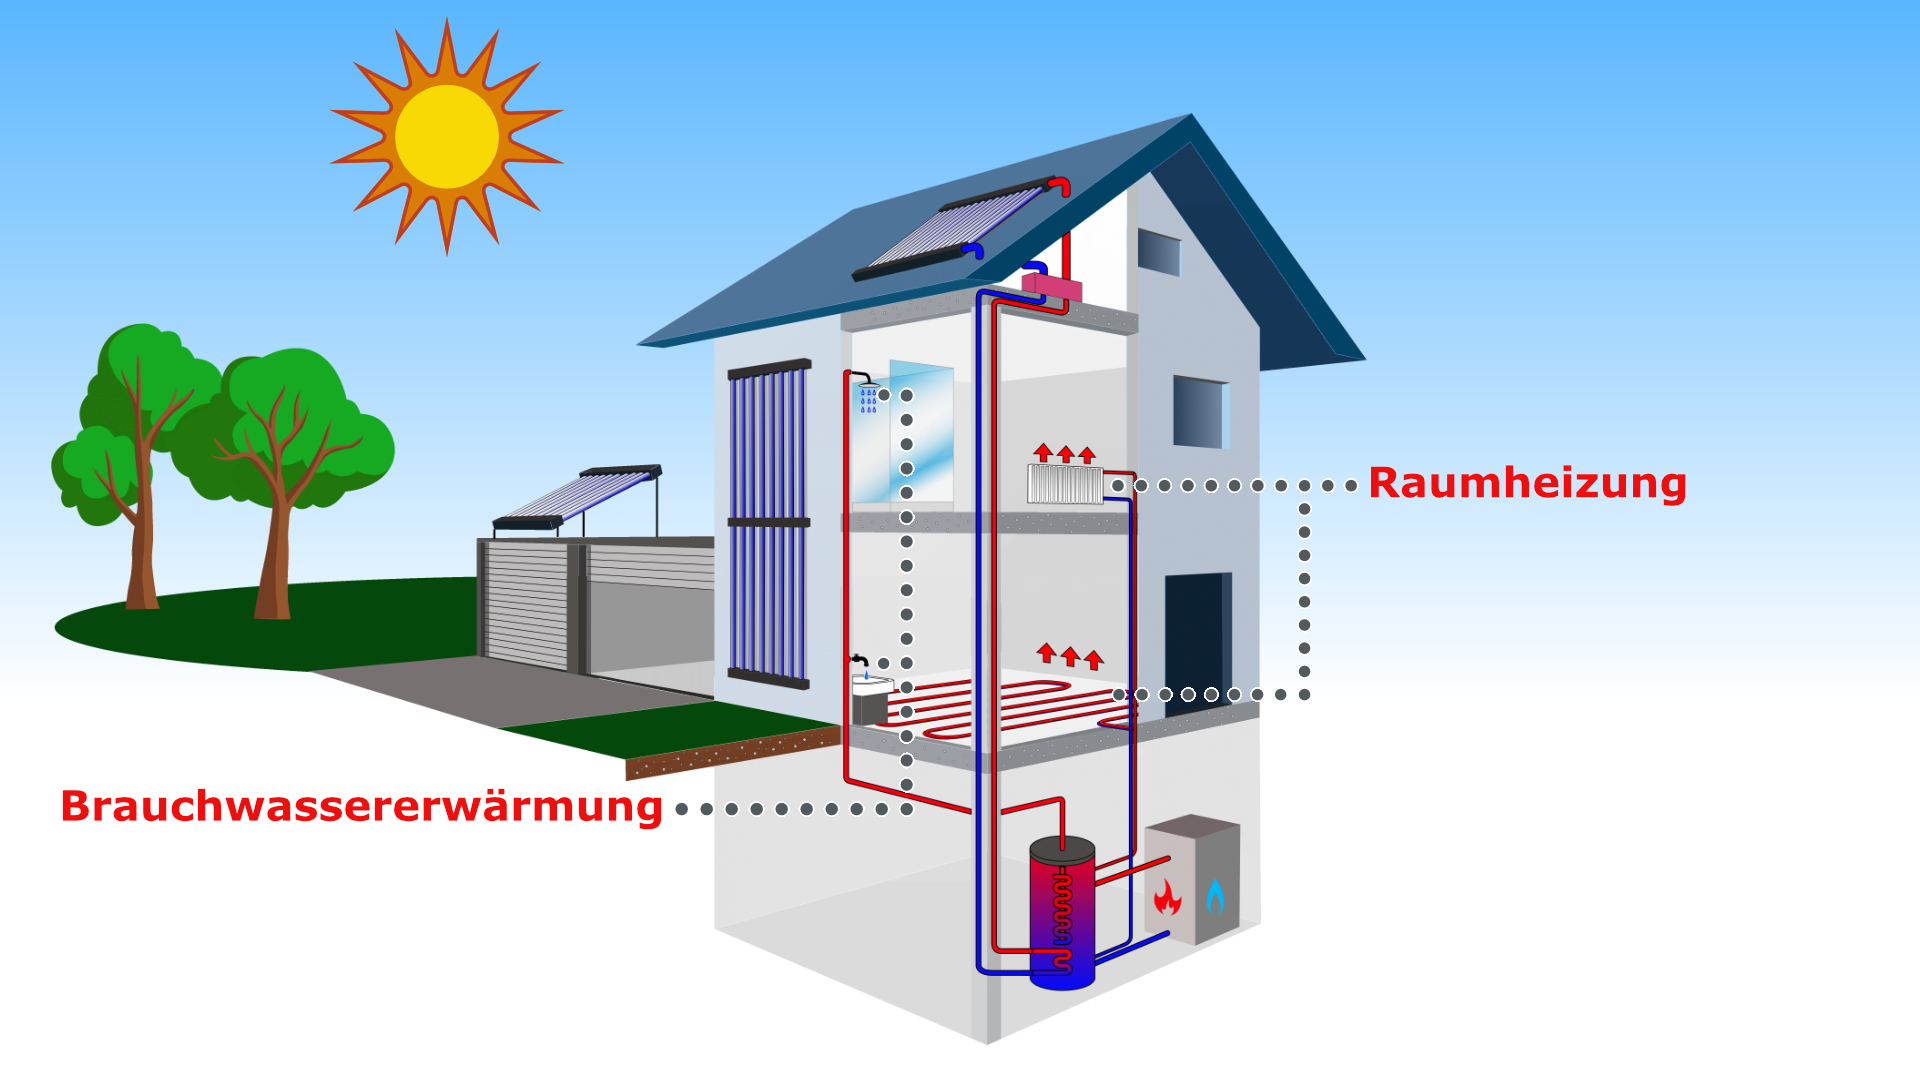 Der airwasol LSair Vakuumröhren-Solarluftkollektor! Auf dem Dach, an der Fassade oder mit Aufständerung. Ein System. Viele Möglichkeiten.